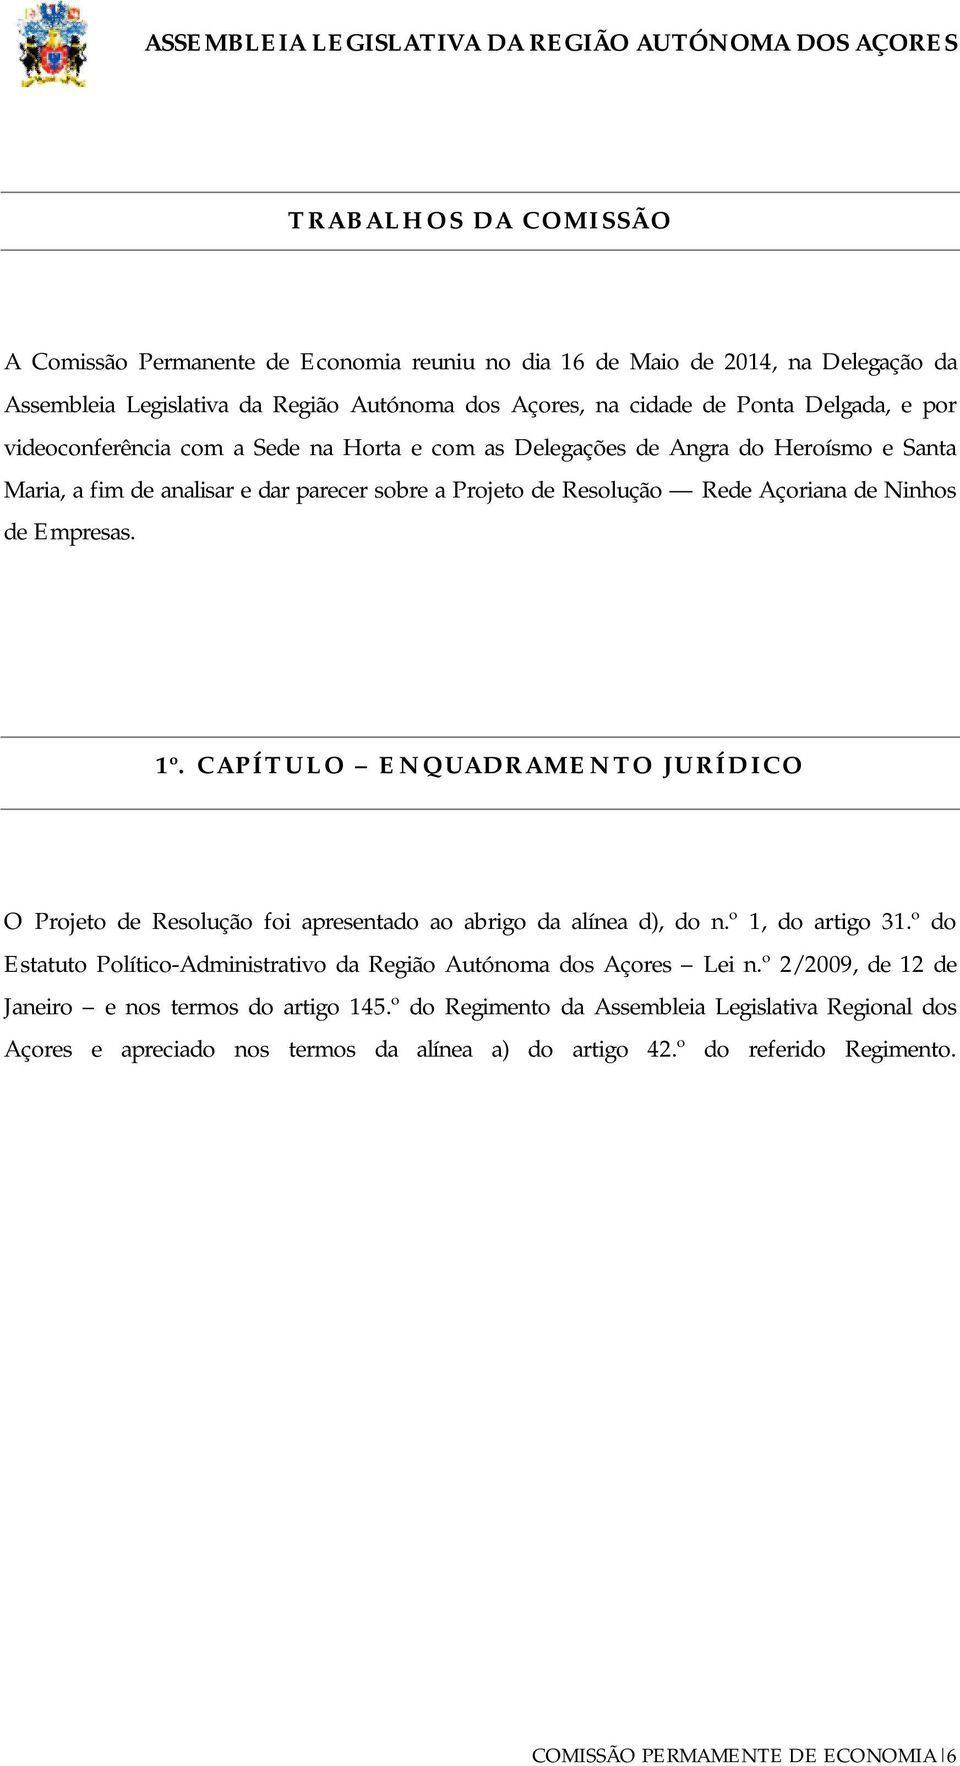 Resolução Rede Açoriana de Ninhos de Empresas. 1º. CAPÍTULO ENQUADRAMENTO JURÍDICO O Projeto de Resolução foi apresentado ao abrigo da alínea d), do n.º 1, do artigo 31.